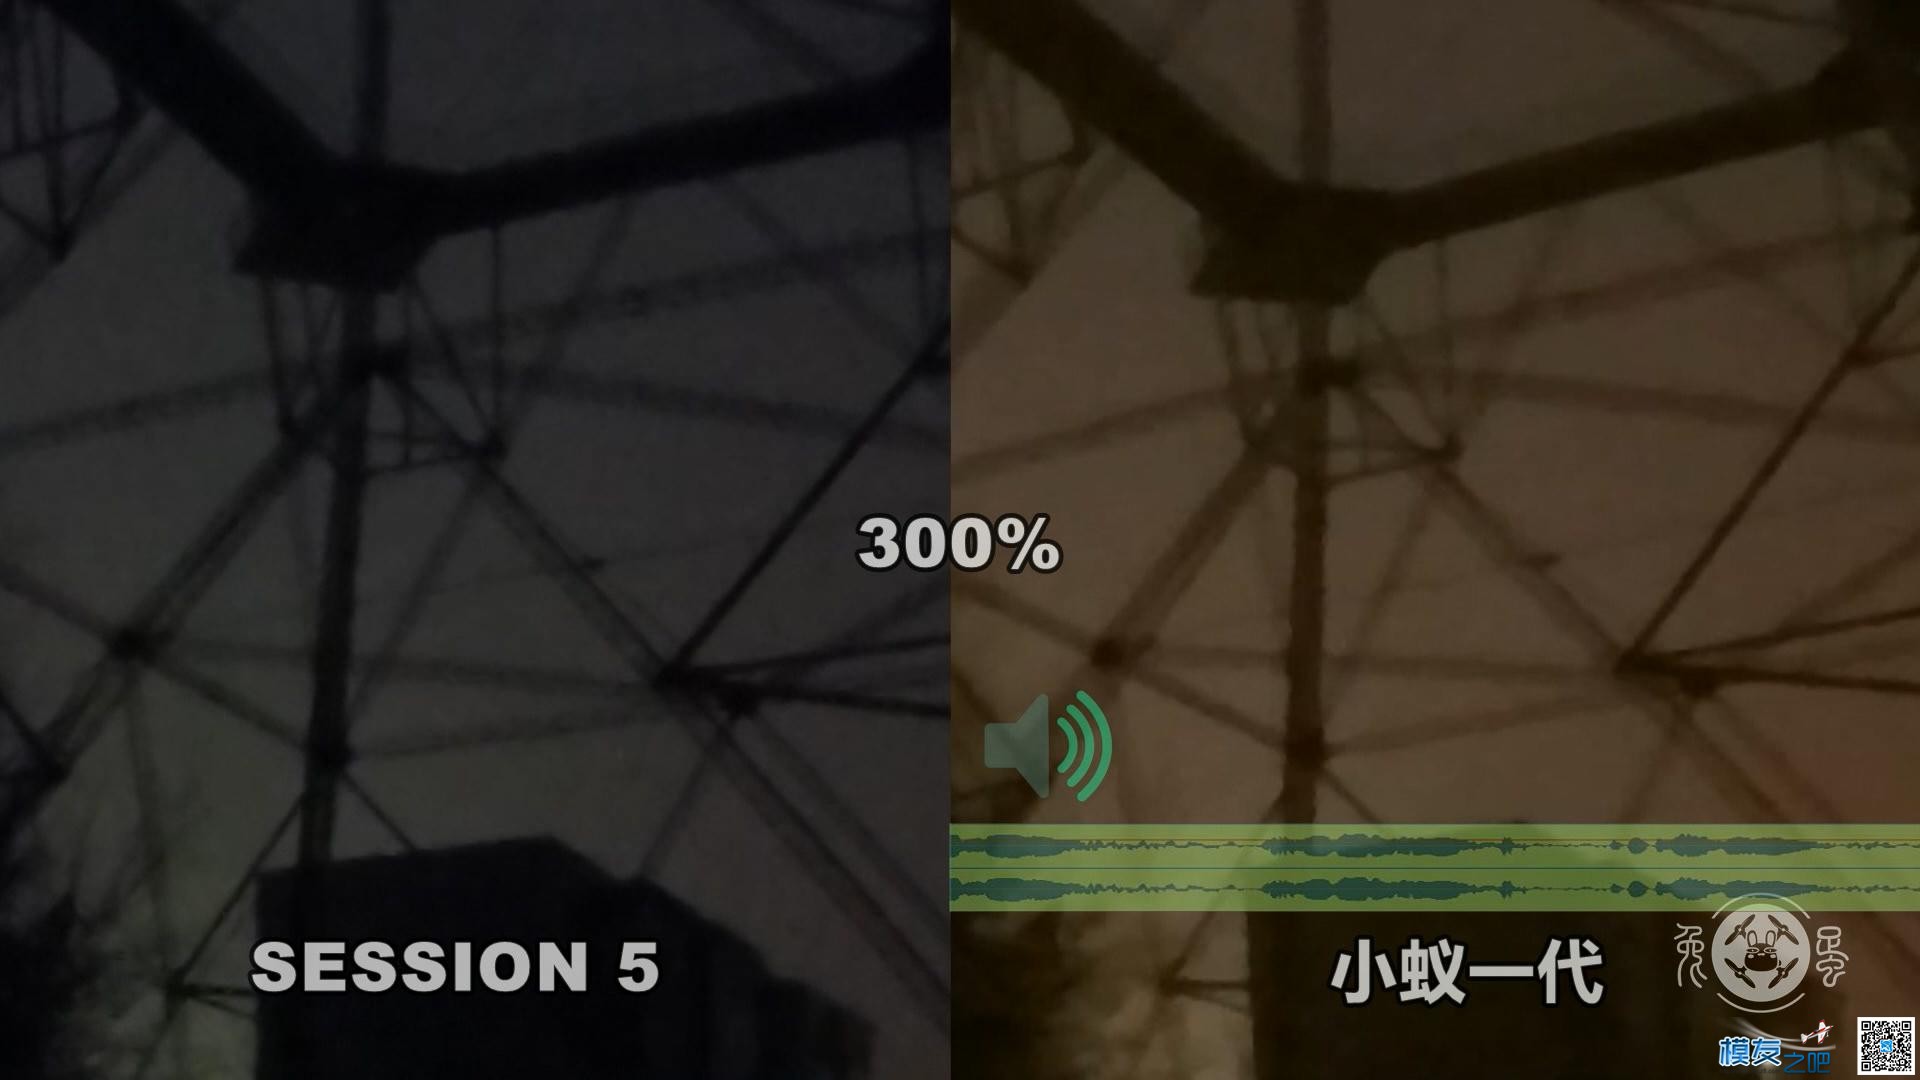 【兔蛋FPV】SESSION 5 VS 小蚁一代 对比评测 youku,一代,对比,评测 作者:兔蛋 4760 